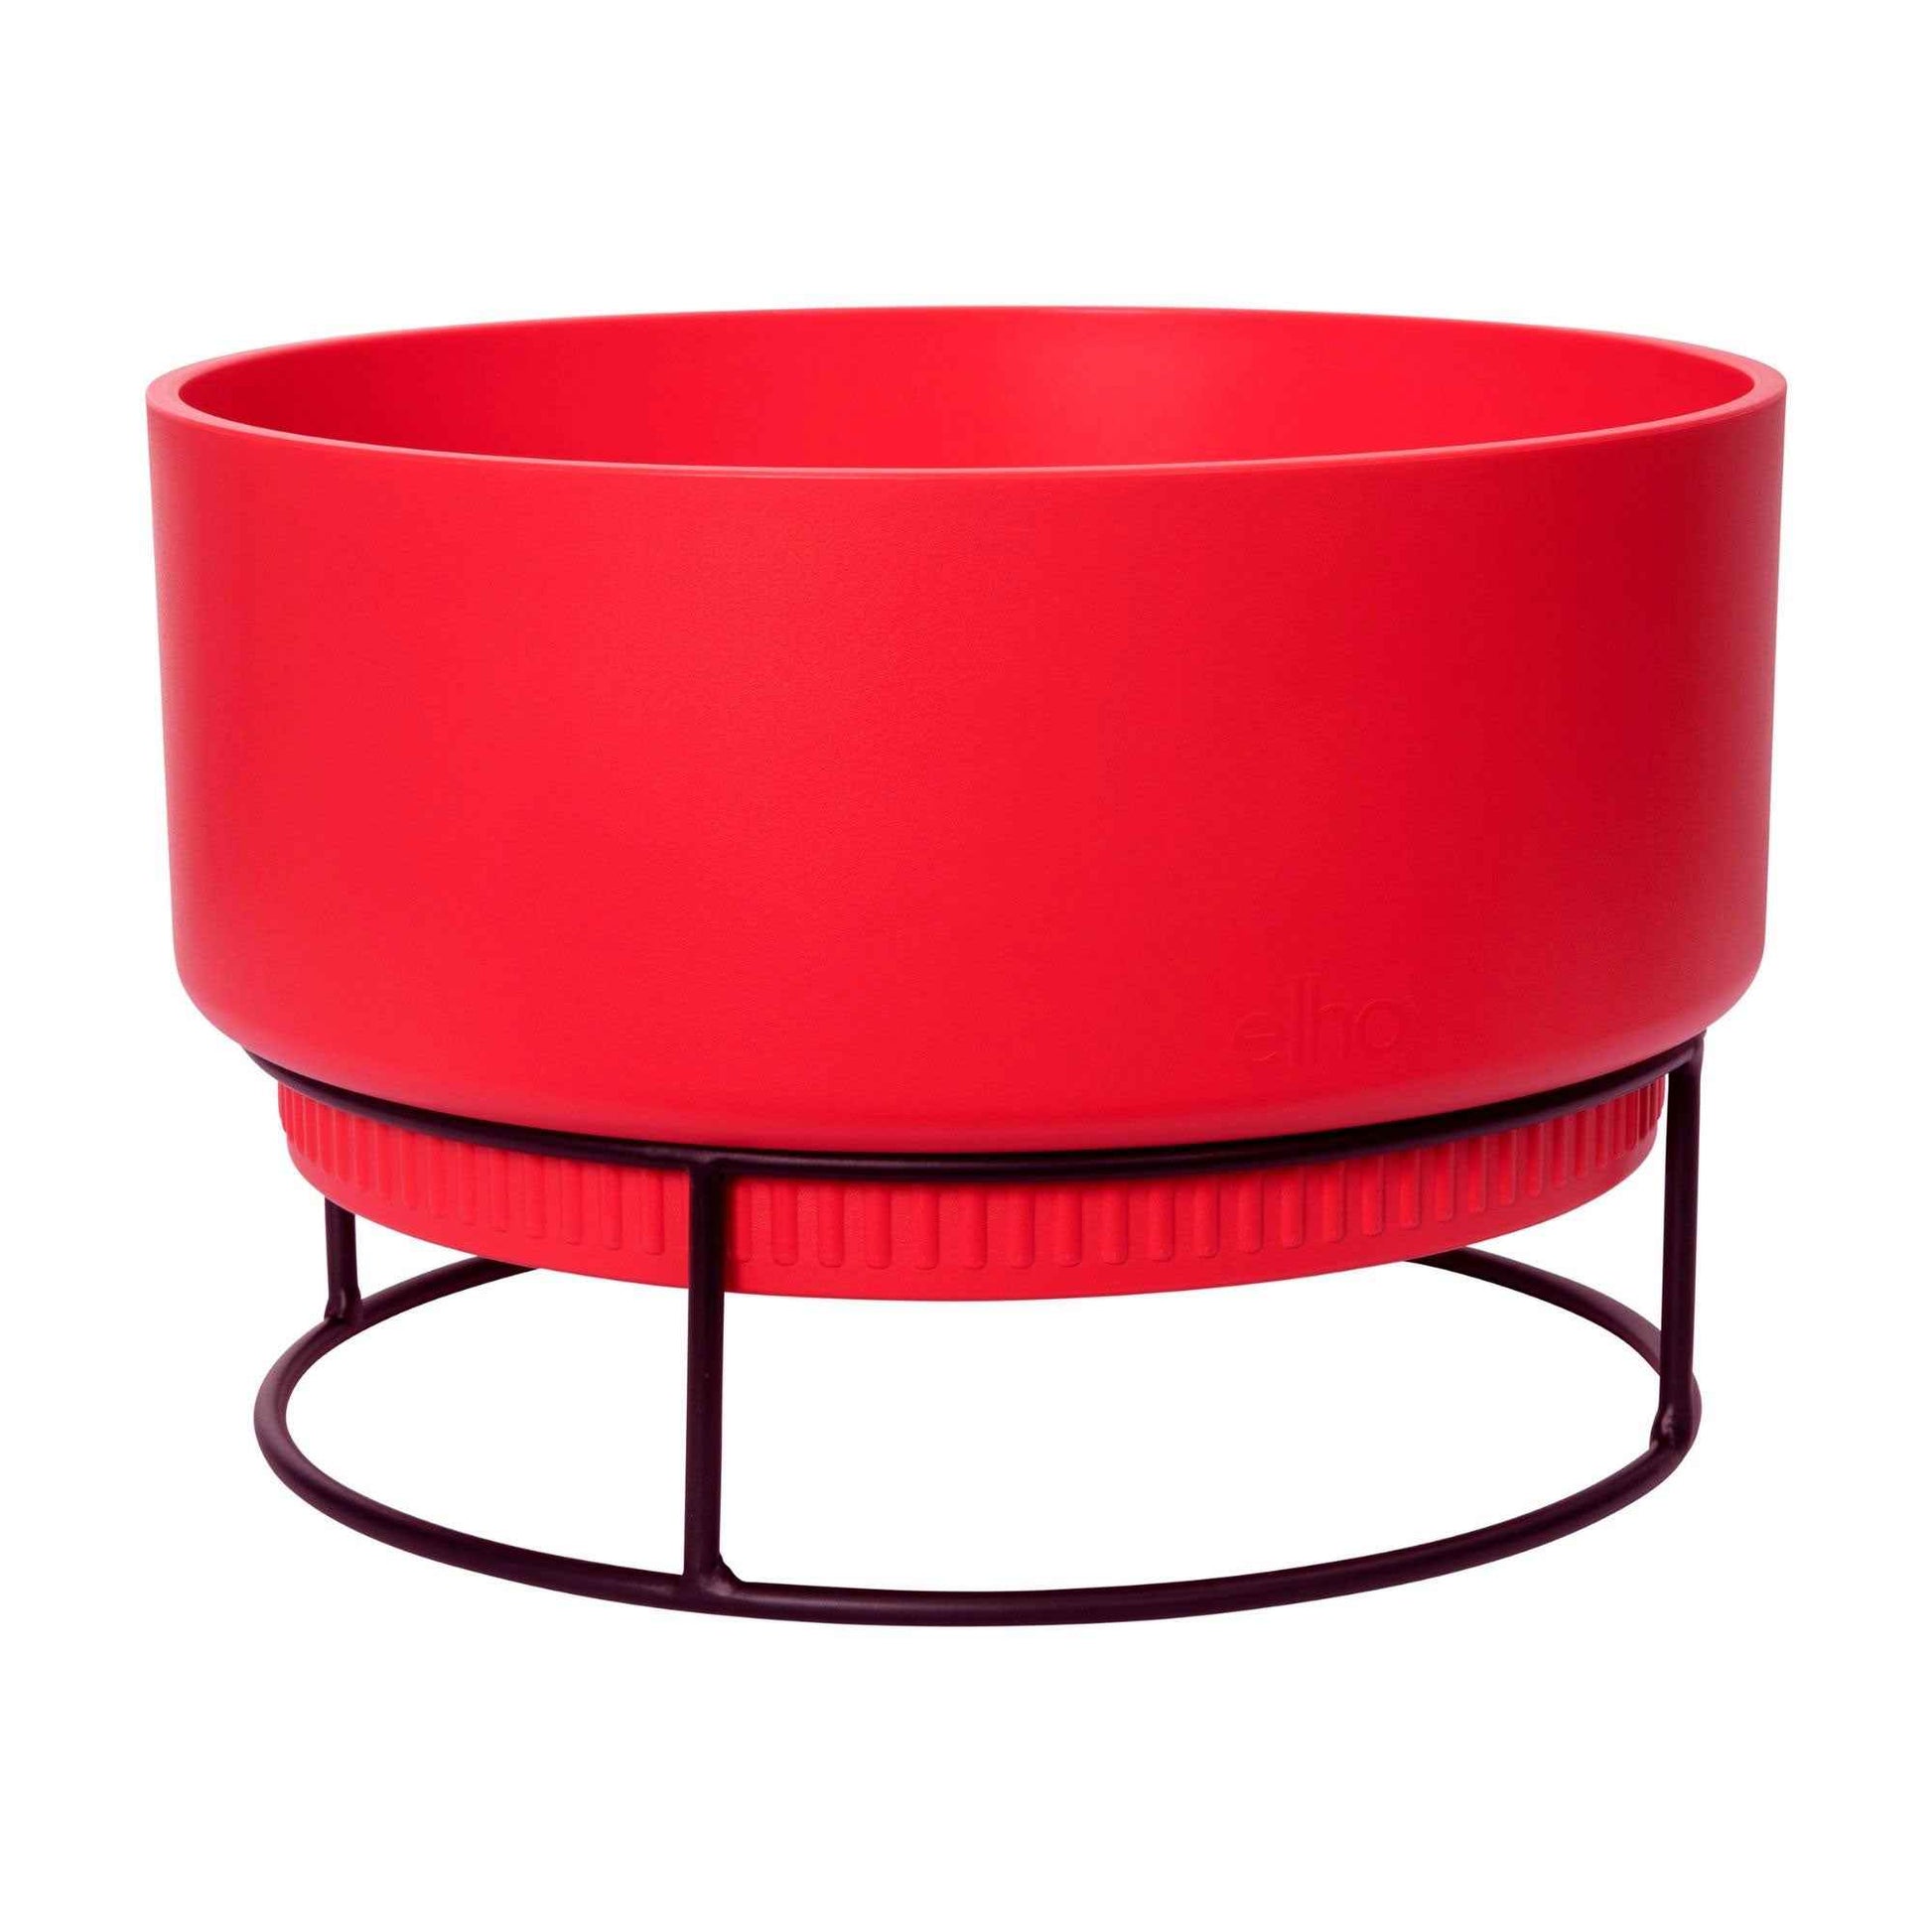 Elho B. for Studio Bowl -  Pot pour l'intérieur avec table à plantes Rouge - Elho